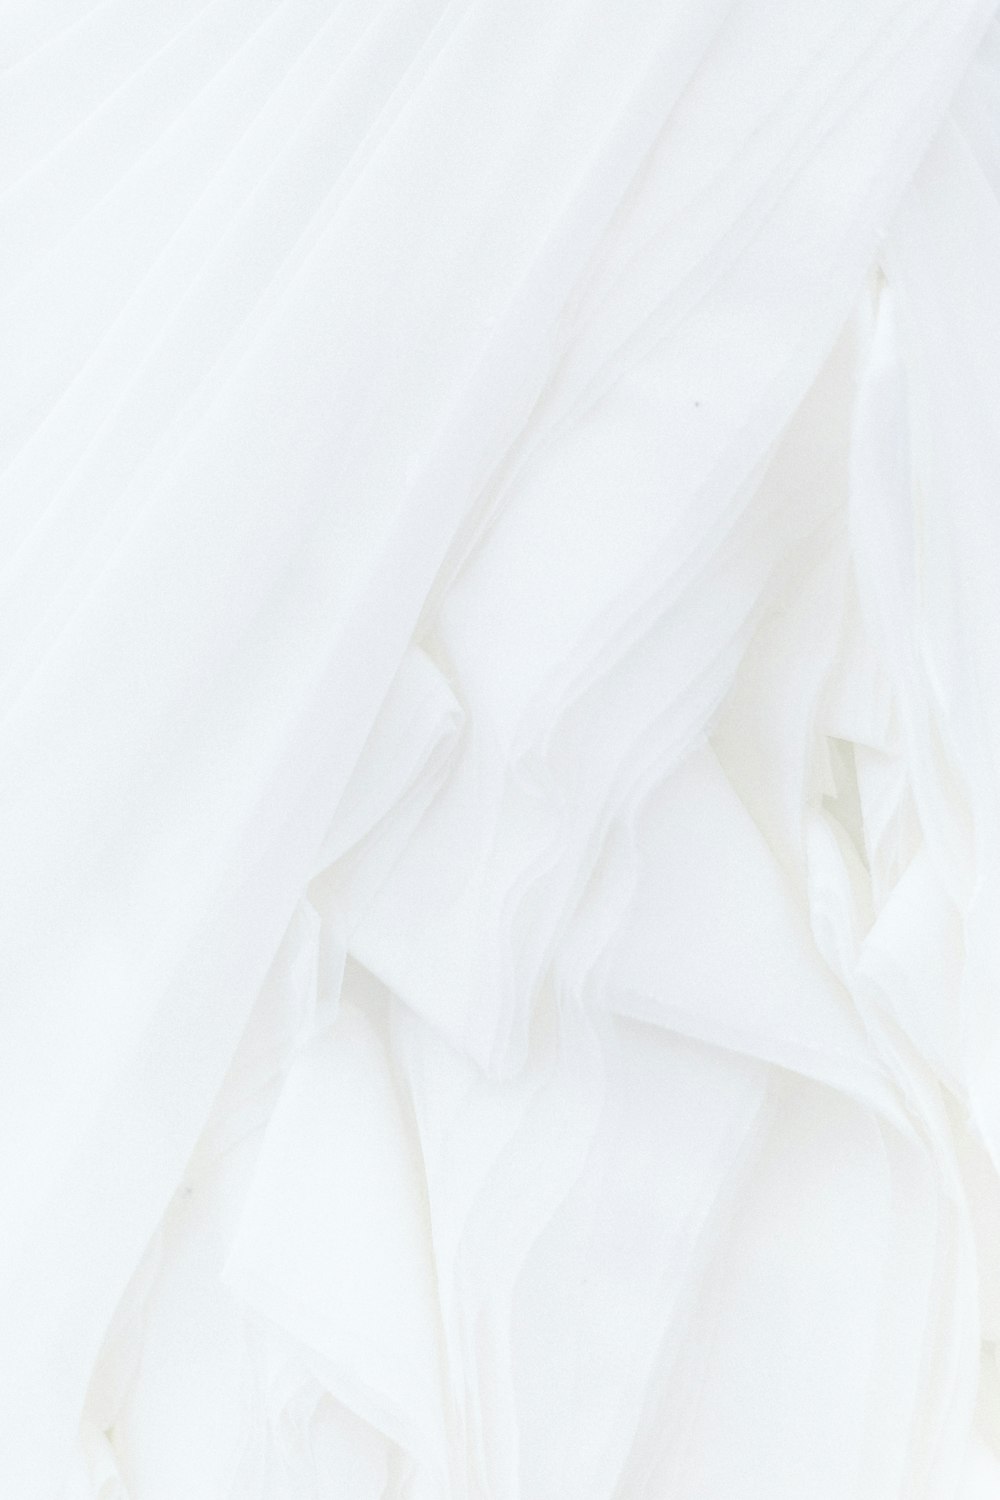 Tông màu trắng tinh khiết được phối hợp một cách hài hòa mang lại cho hình nền một vẻ đẹp đầy ấn tượng. Với những đường nét tỉ mỉ và hoa văn tinh tế, hình nền sẽ đem đến cho bạn cảm giác đẹp và thanh lịch.